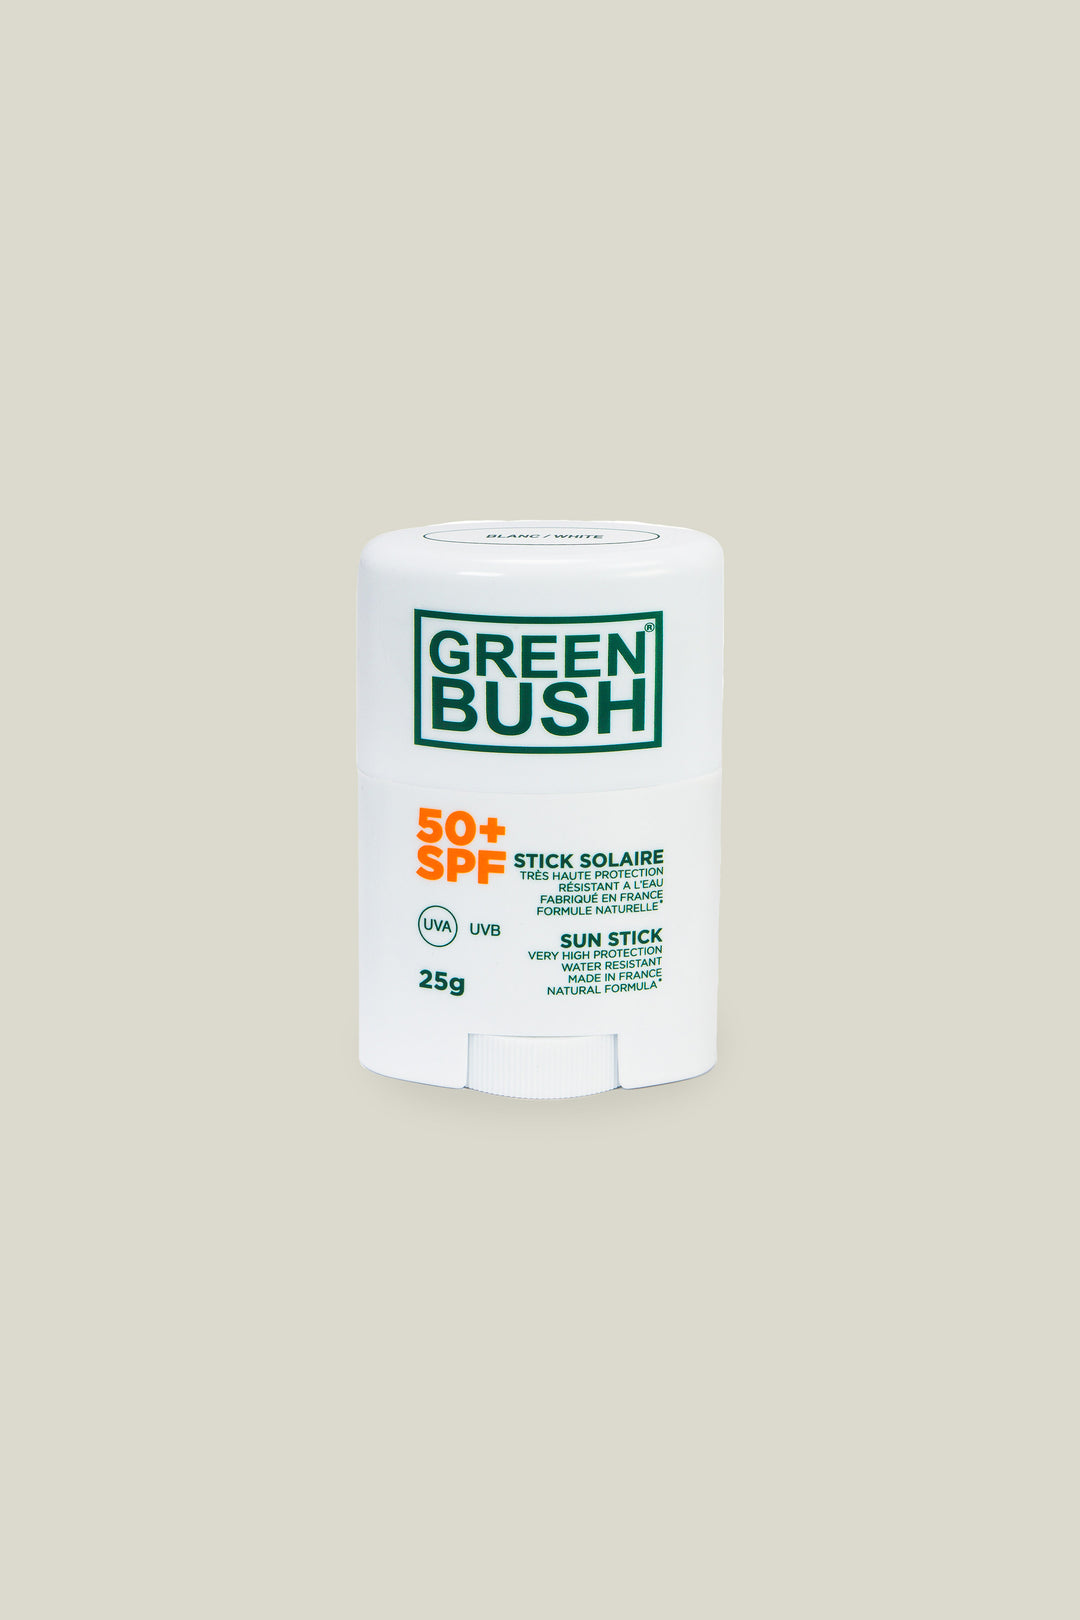 Stick solaire blanc SPF50 - Greenbush - 25g